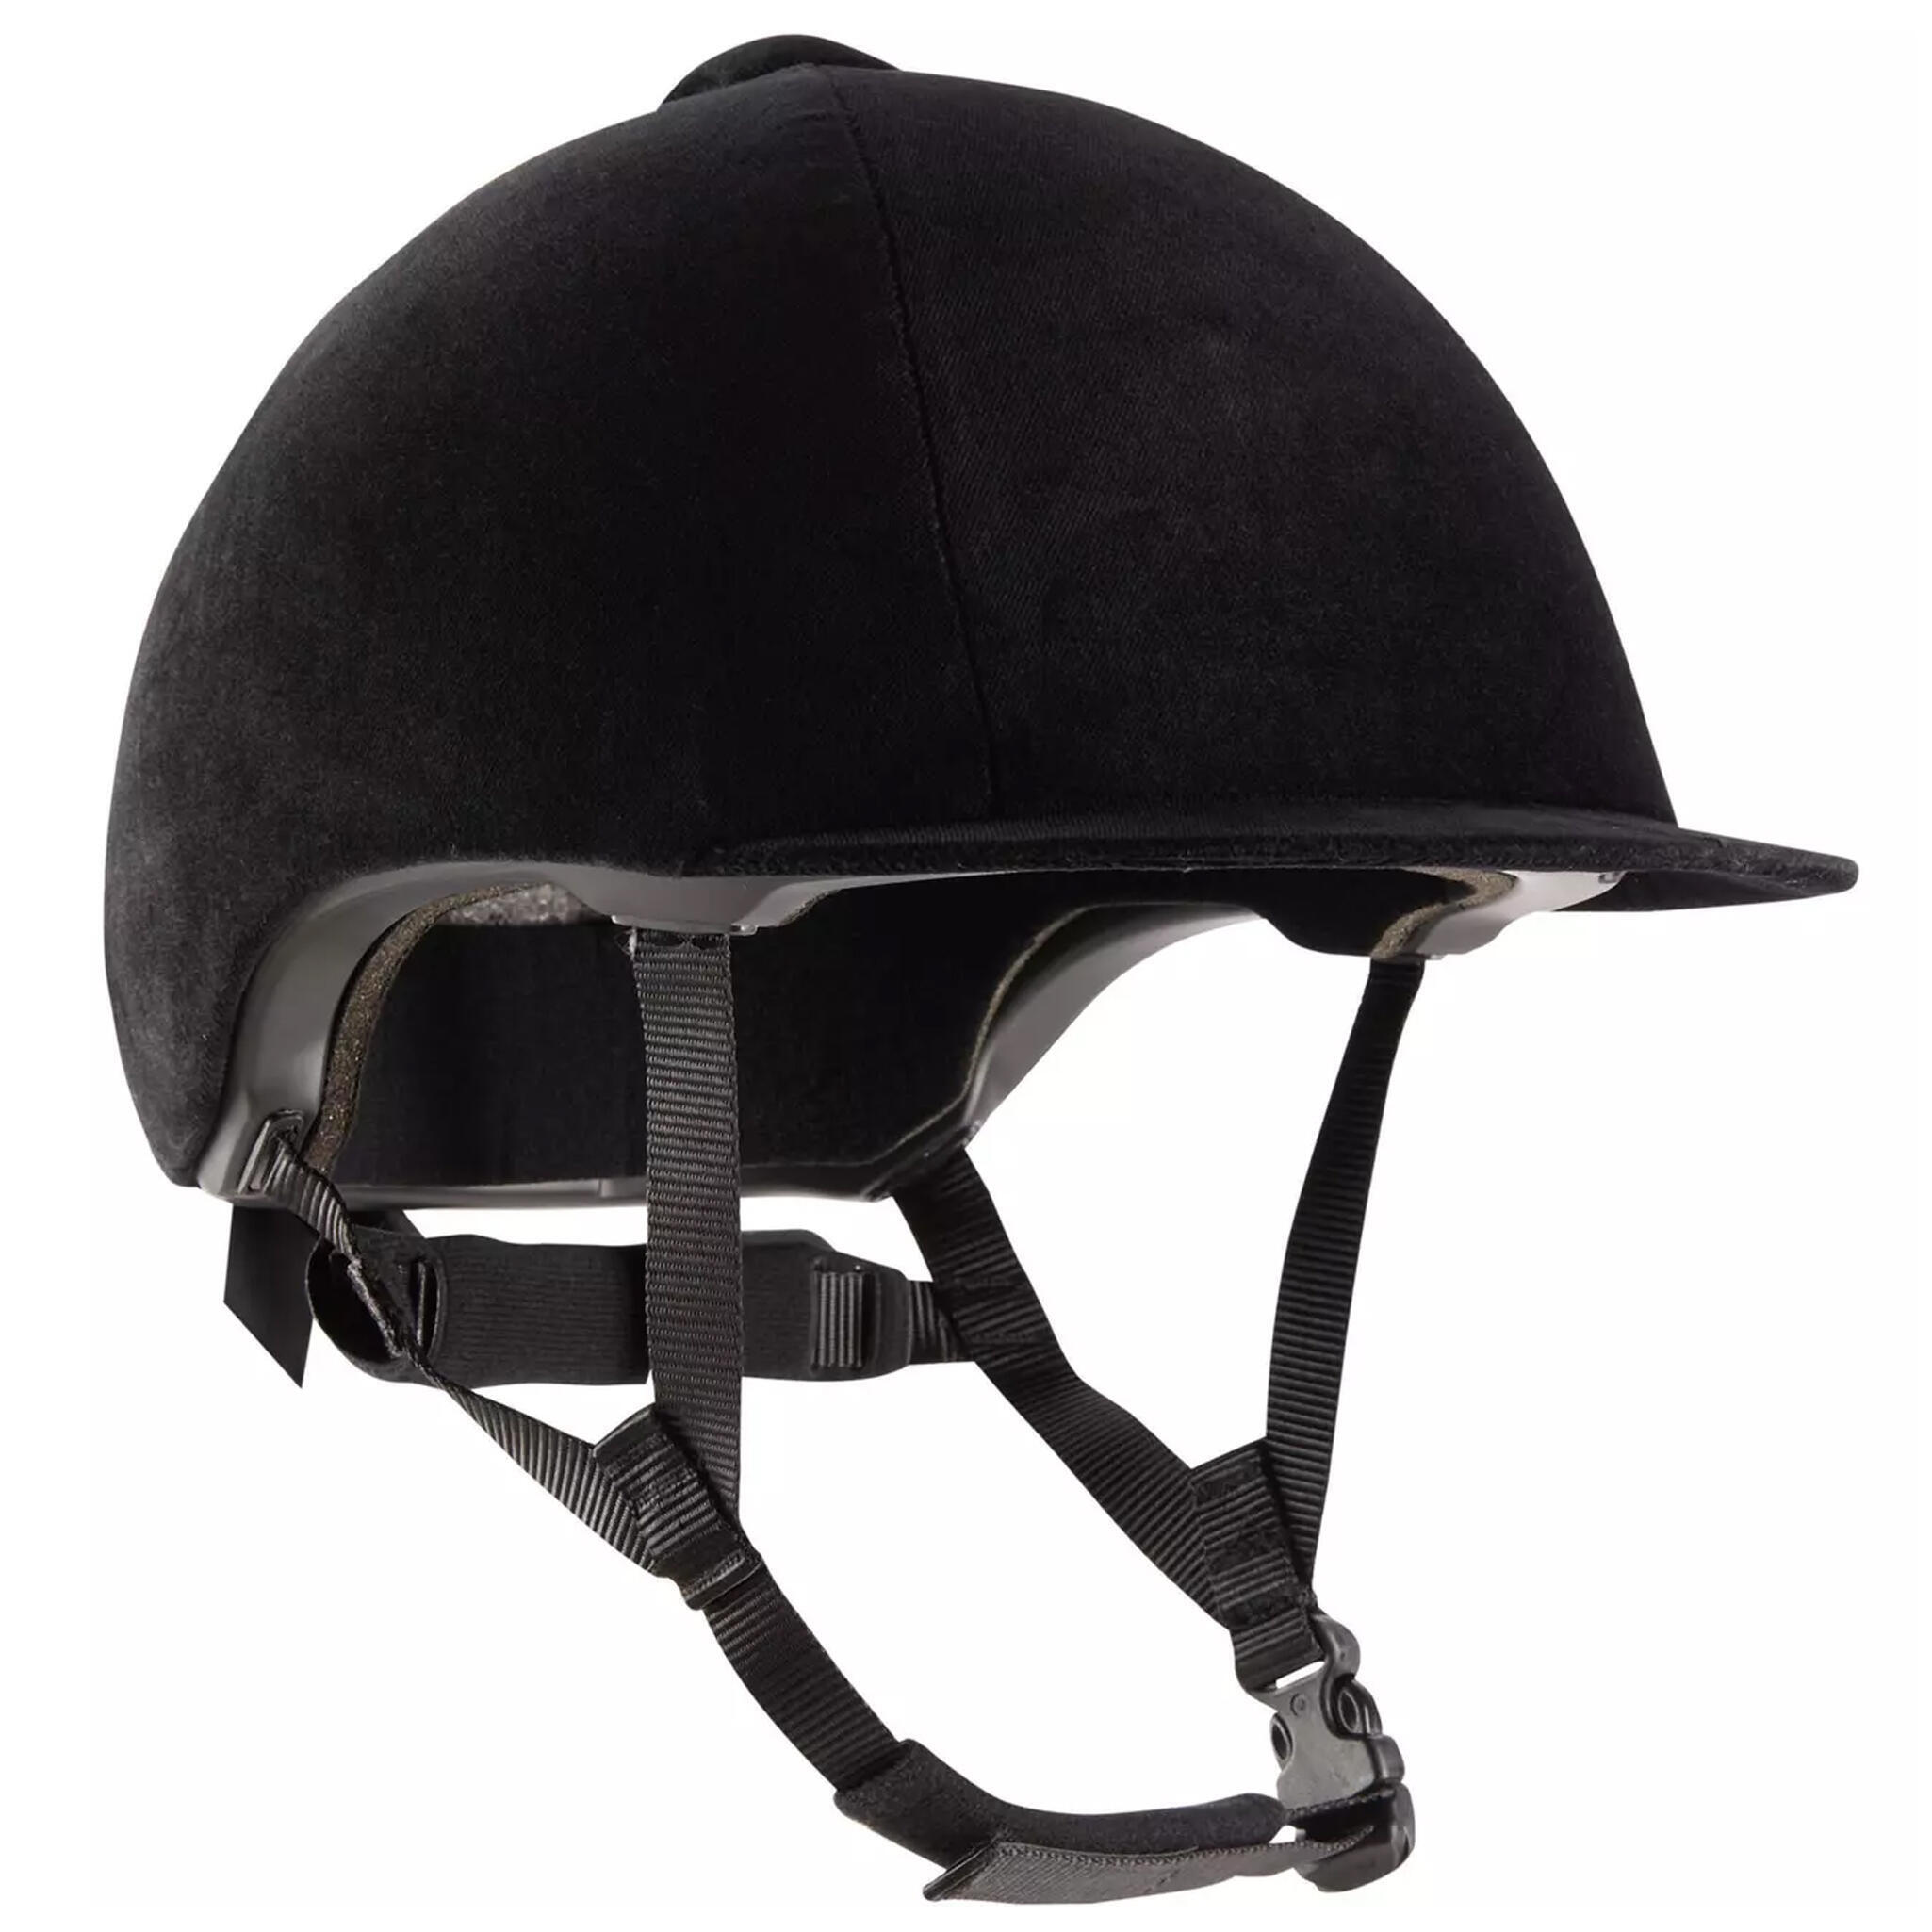 Adult/Kids' Horse Riding Helmet 140 - Black Velvet 4/4